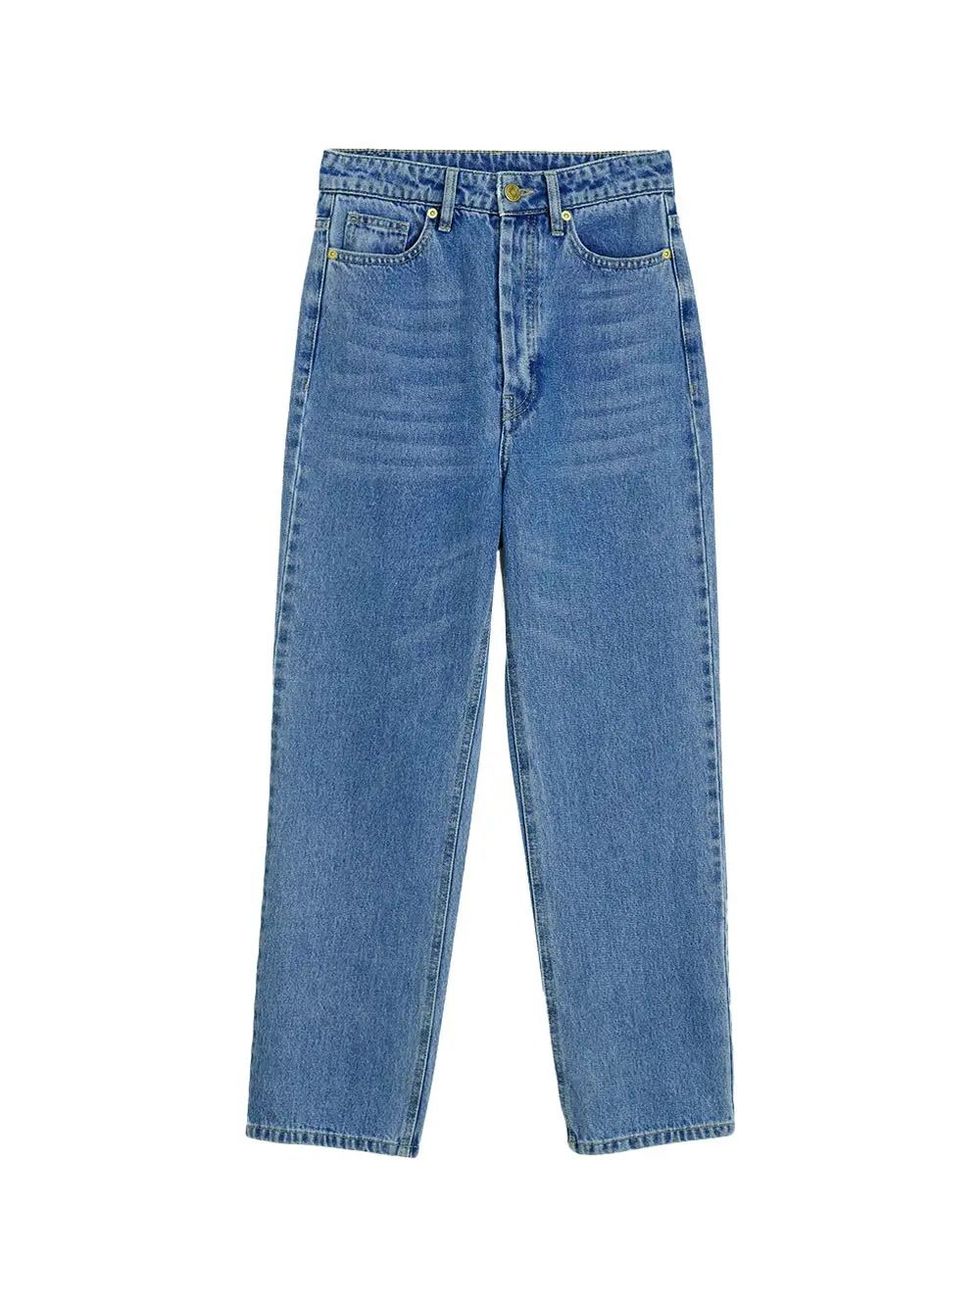 Millet organic cotton jeans